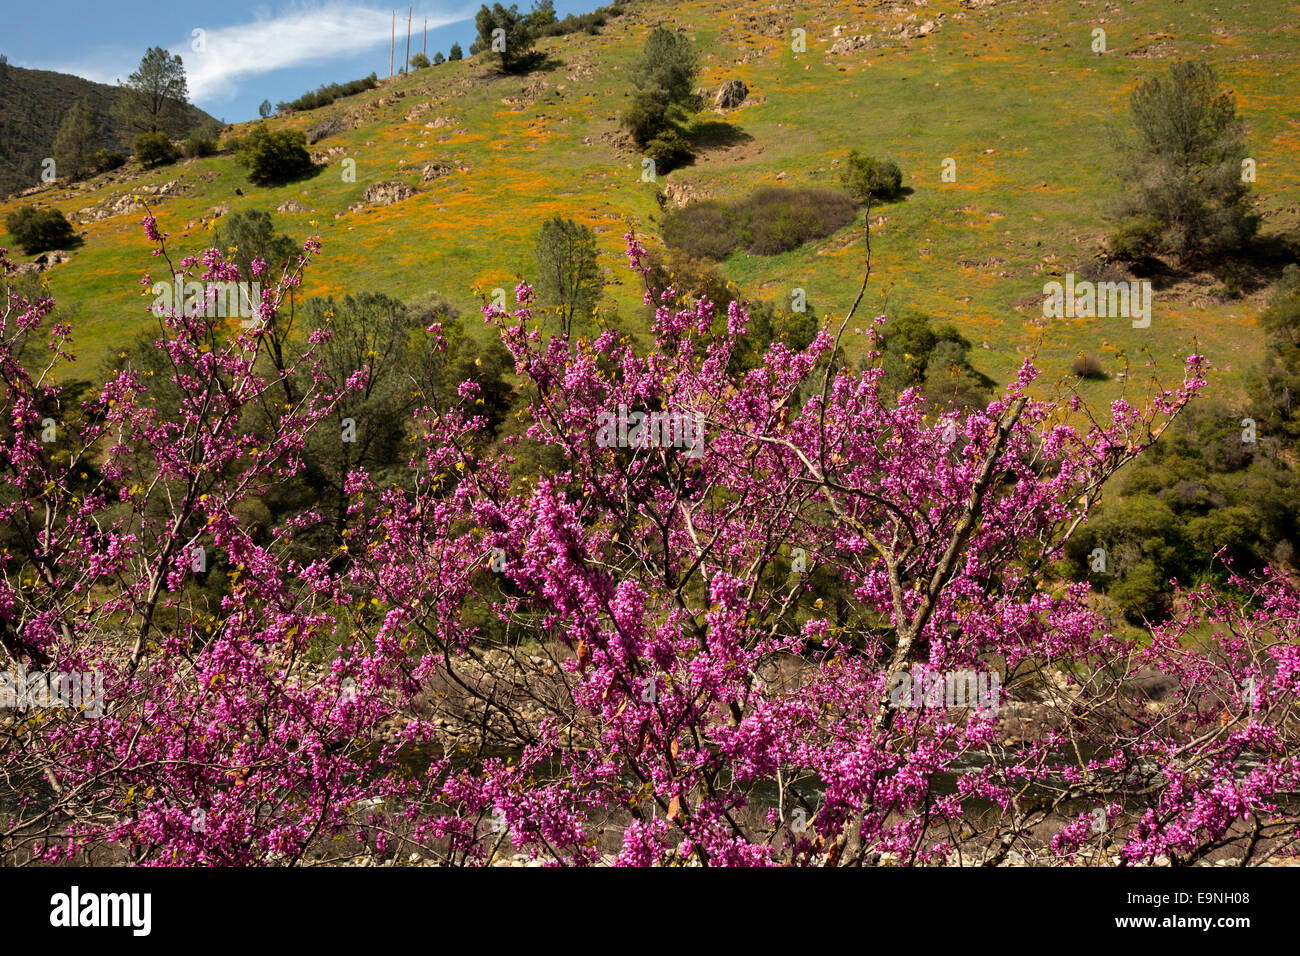 CA02338-00... Kalifornien - Red Bud blühen an den Ufern des Merced River, während Mohnblumen die Wiesen an den Berghängen Farbe Stockfoto